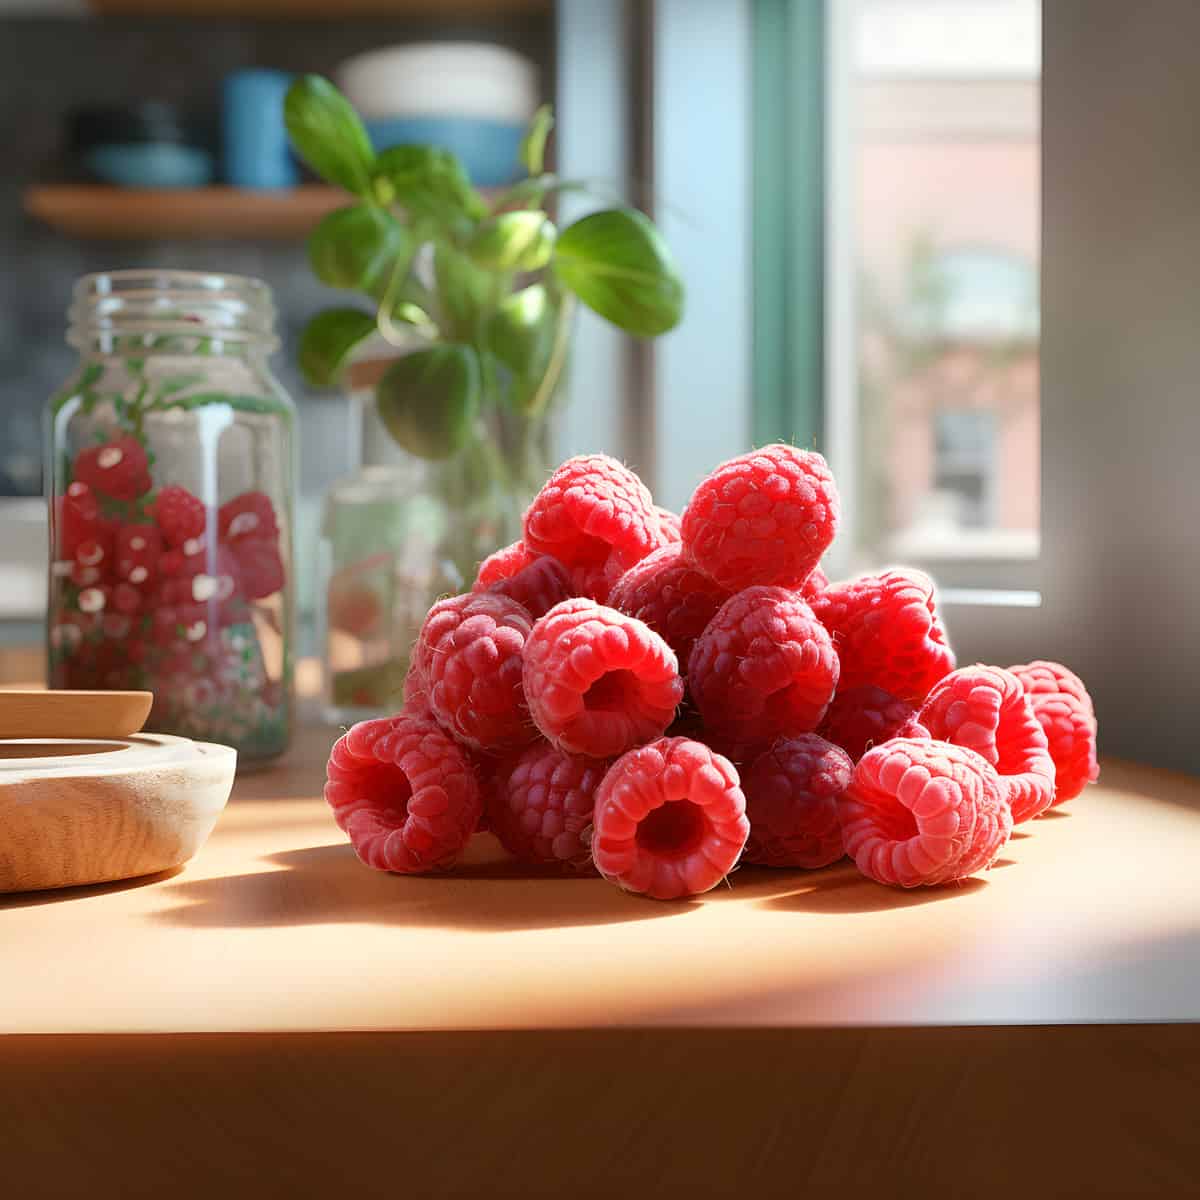 Korean Raspberry on a kitchen counter